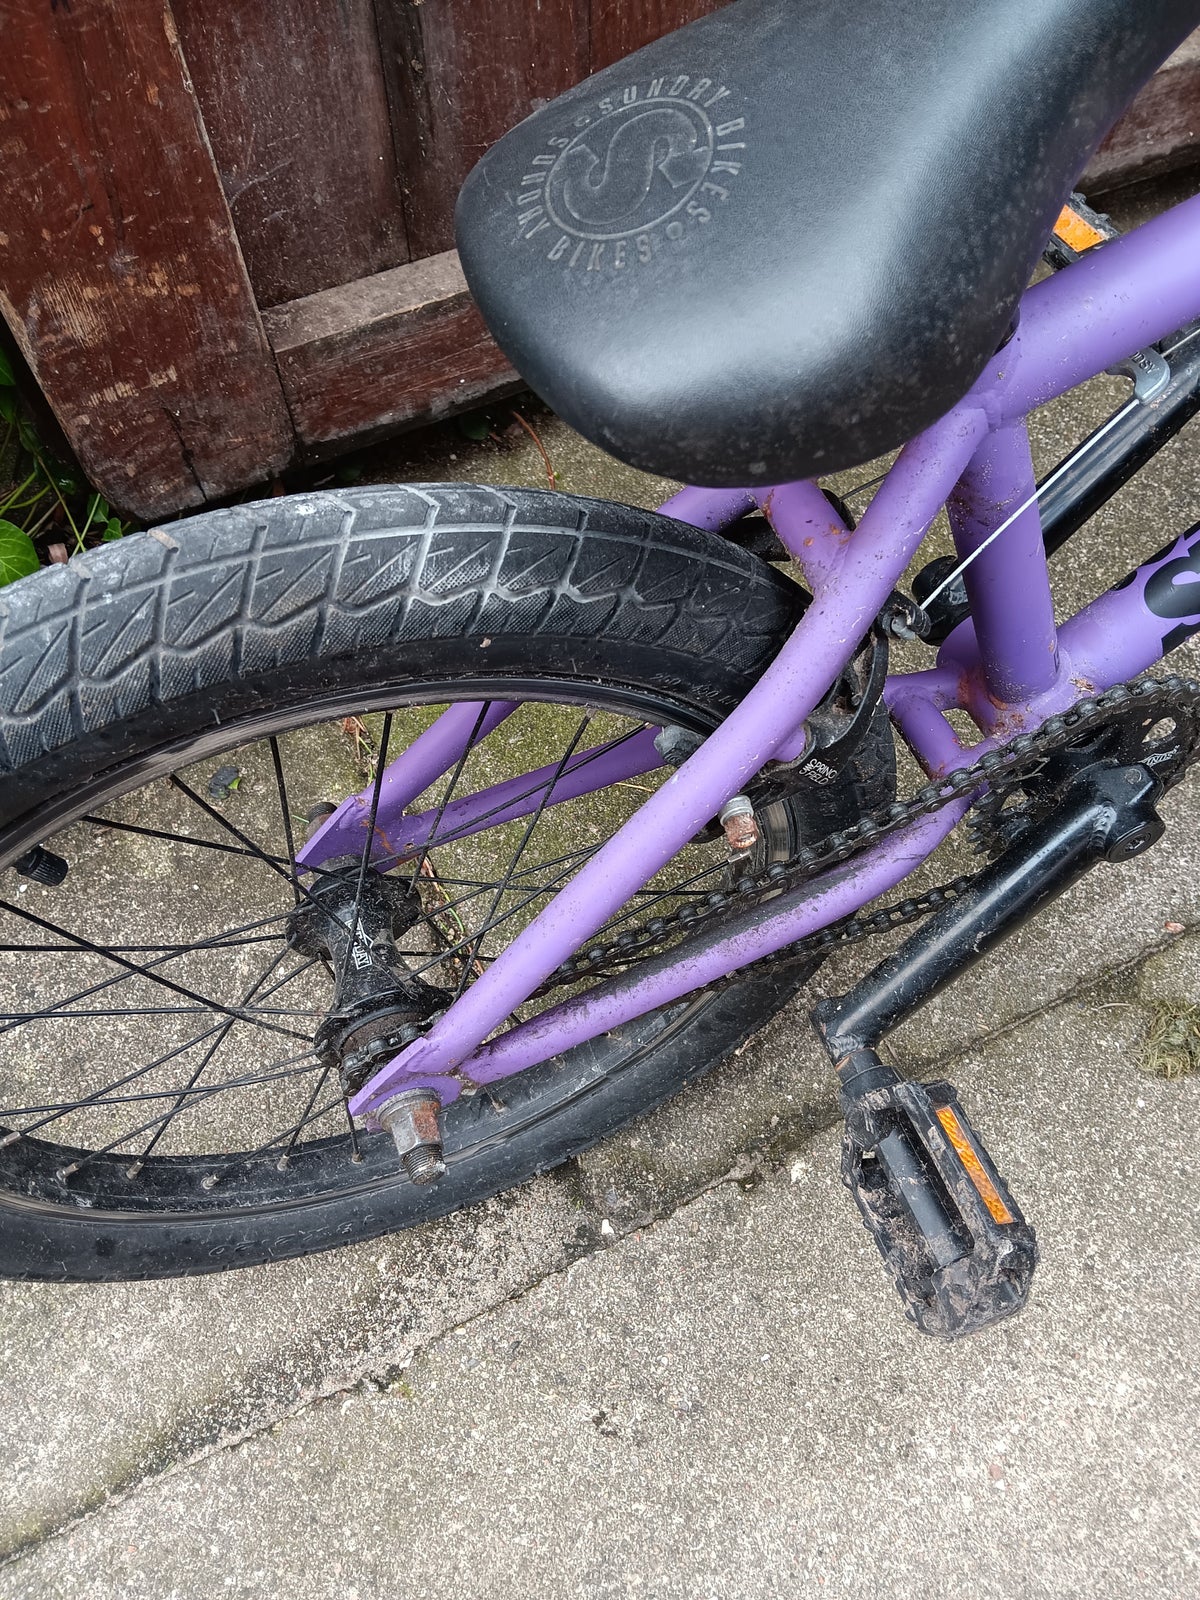 Unisex børnecykel, BMX, andet mærke